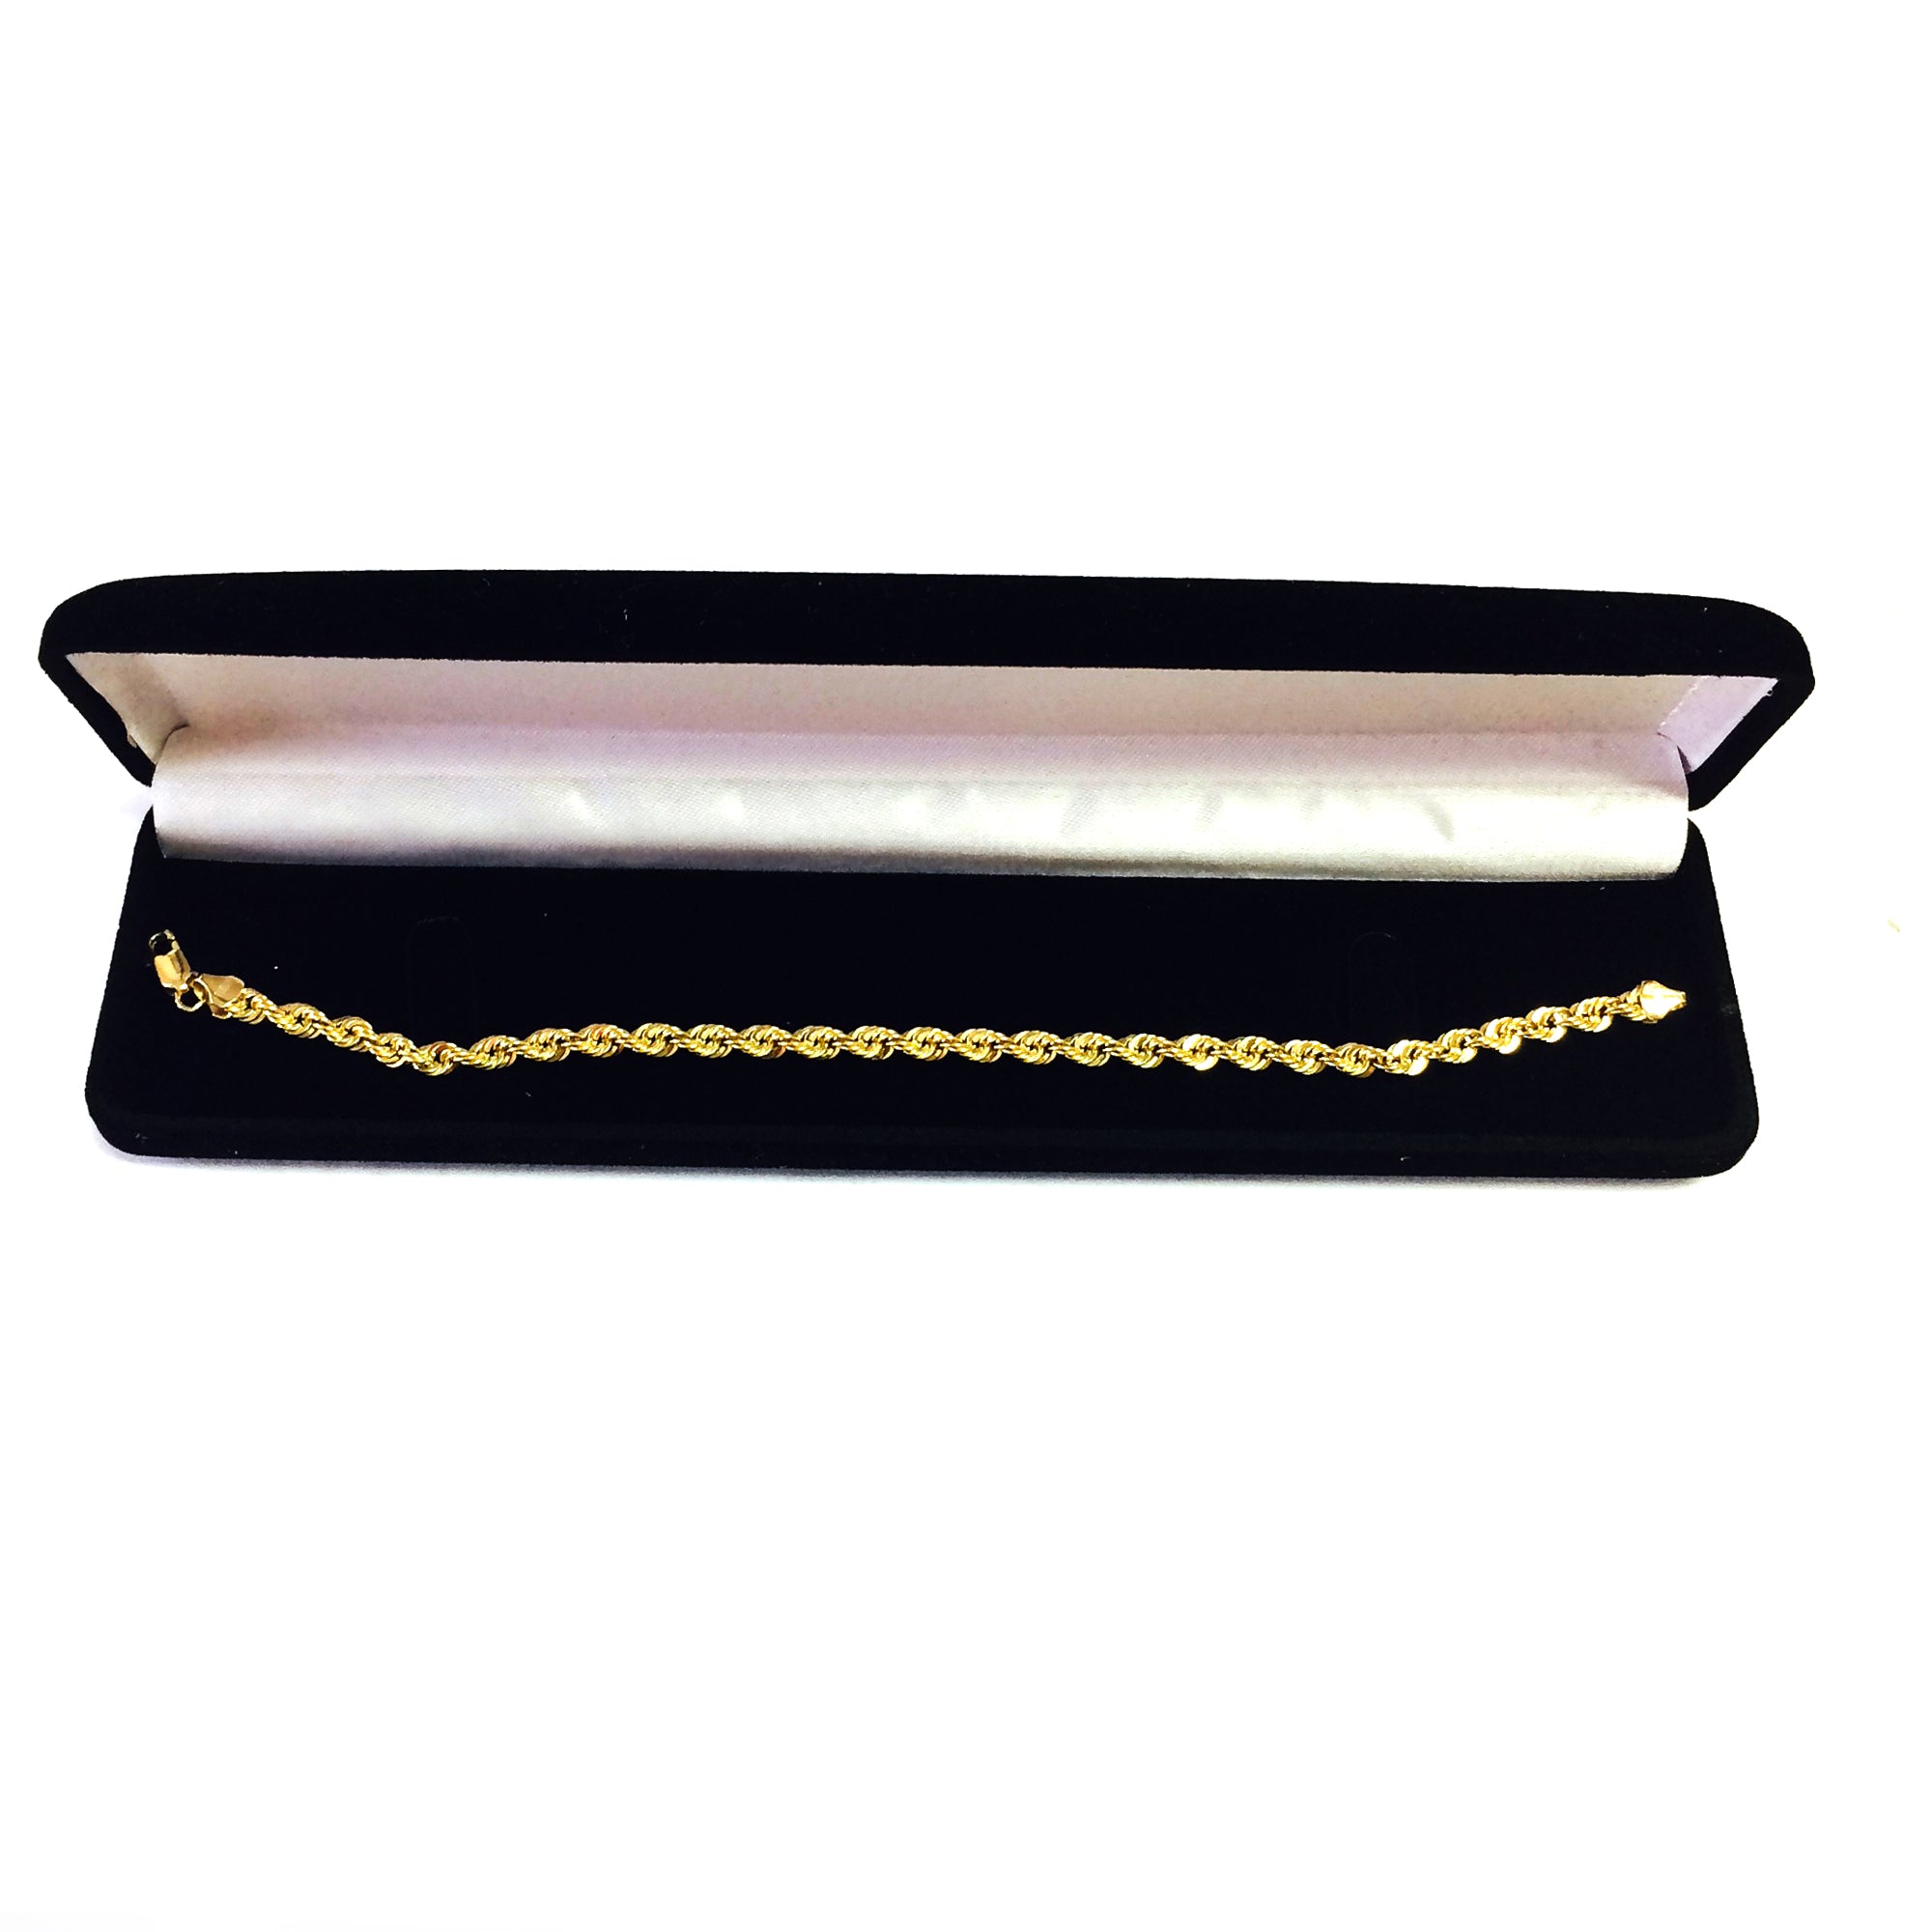 14K gult gullfylt solid taukjedearmbånd, 4,5 mm, 8,5" fine designersmykker for menn og kvinner